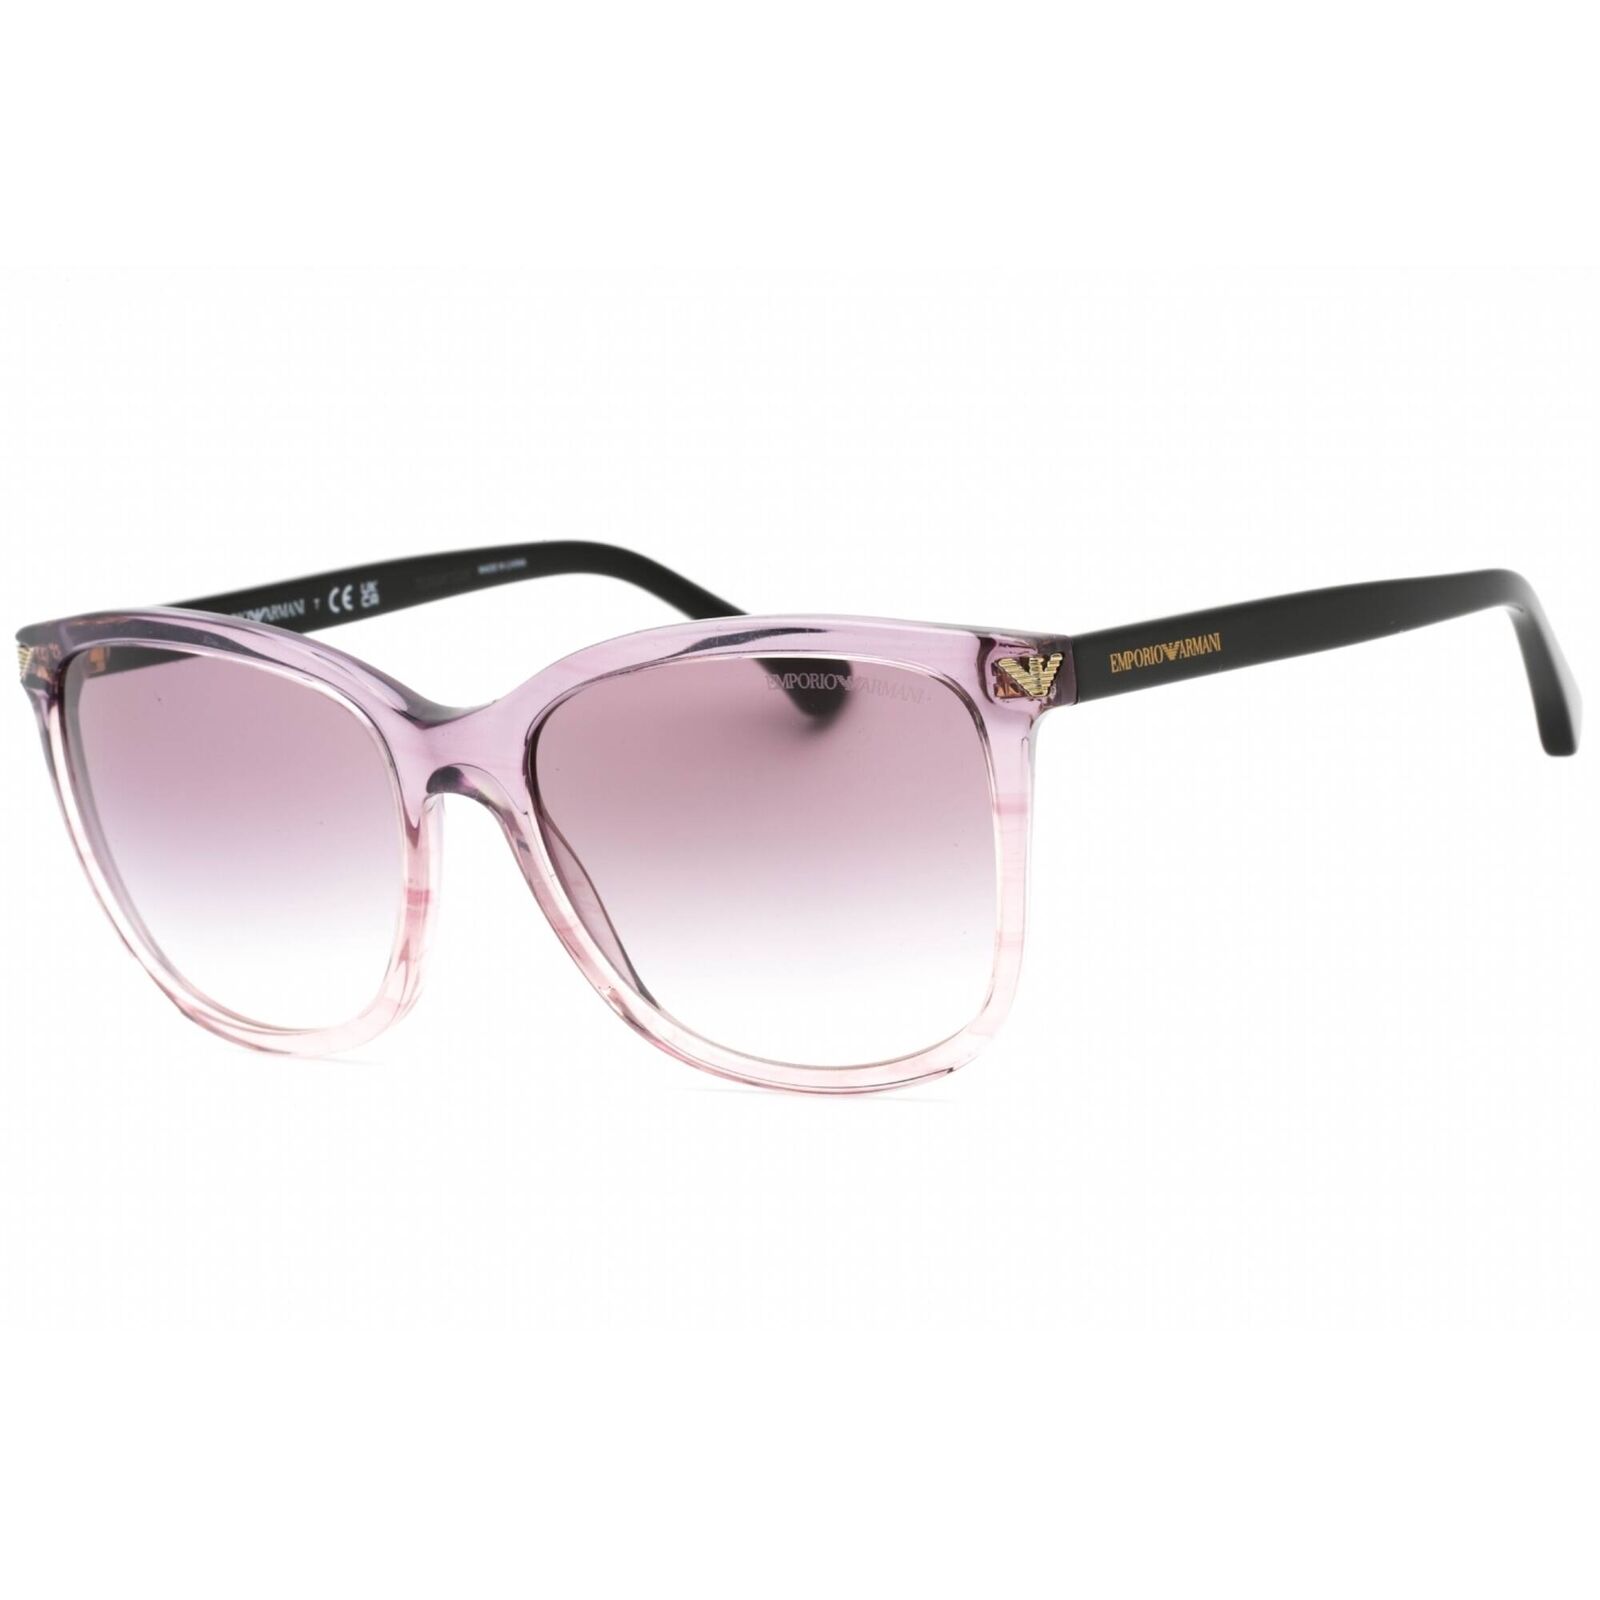 Emporio Armani Women's Sunglasses Transparent Gradient Frame 0EA4060 59668H Emporio Armani 0EA4060 59668H